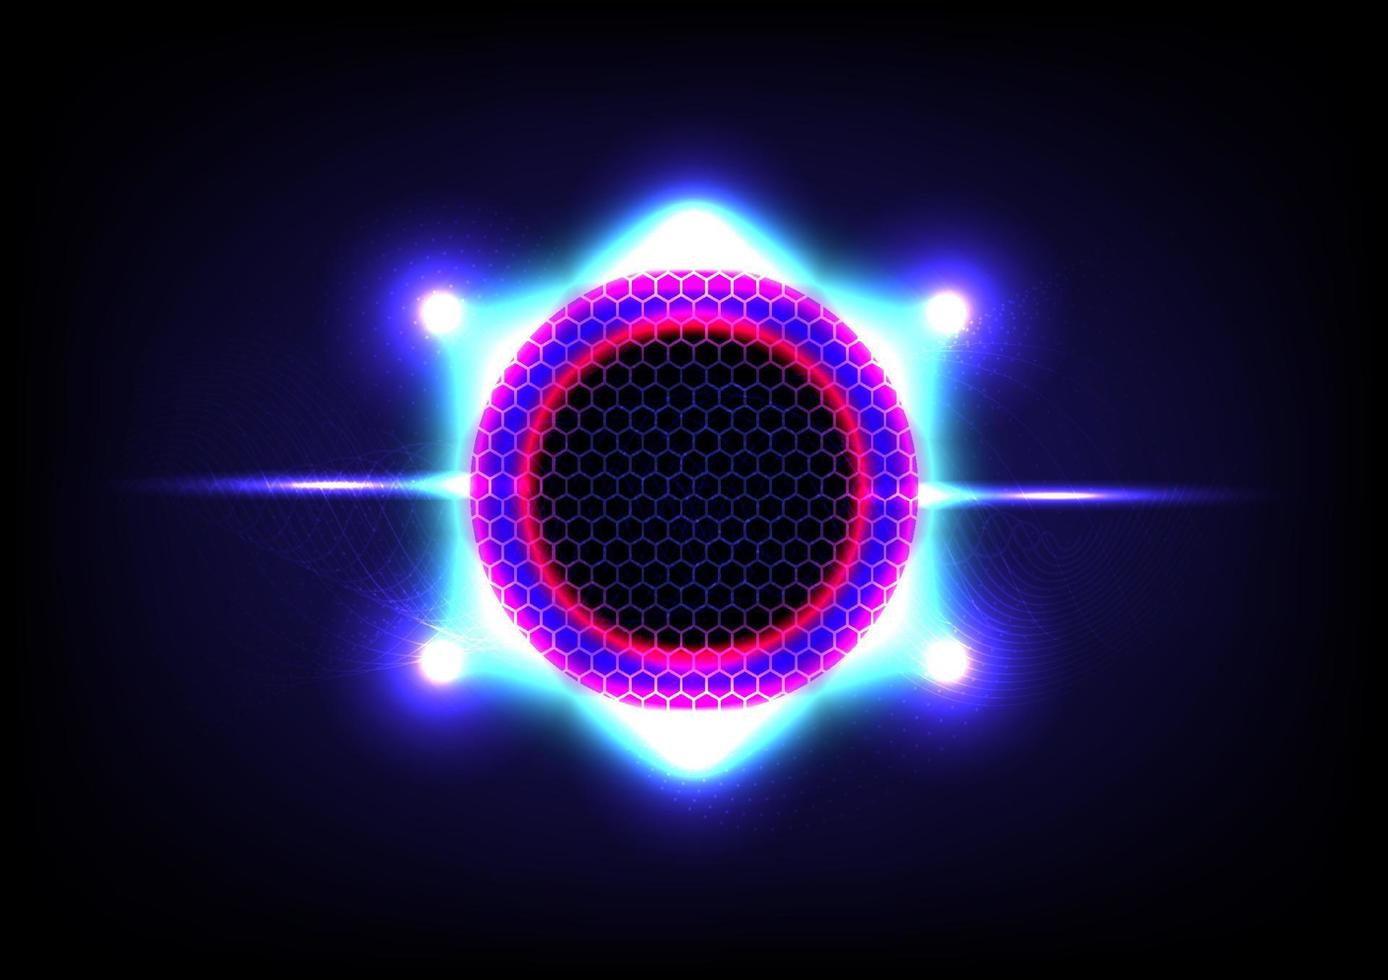 vit och blå abstrakt teknikbakgrund på den svarta bakgrunden. vetenskapens cirkel och ring. glöd och glänsande ljus. vektor